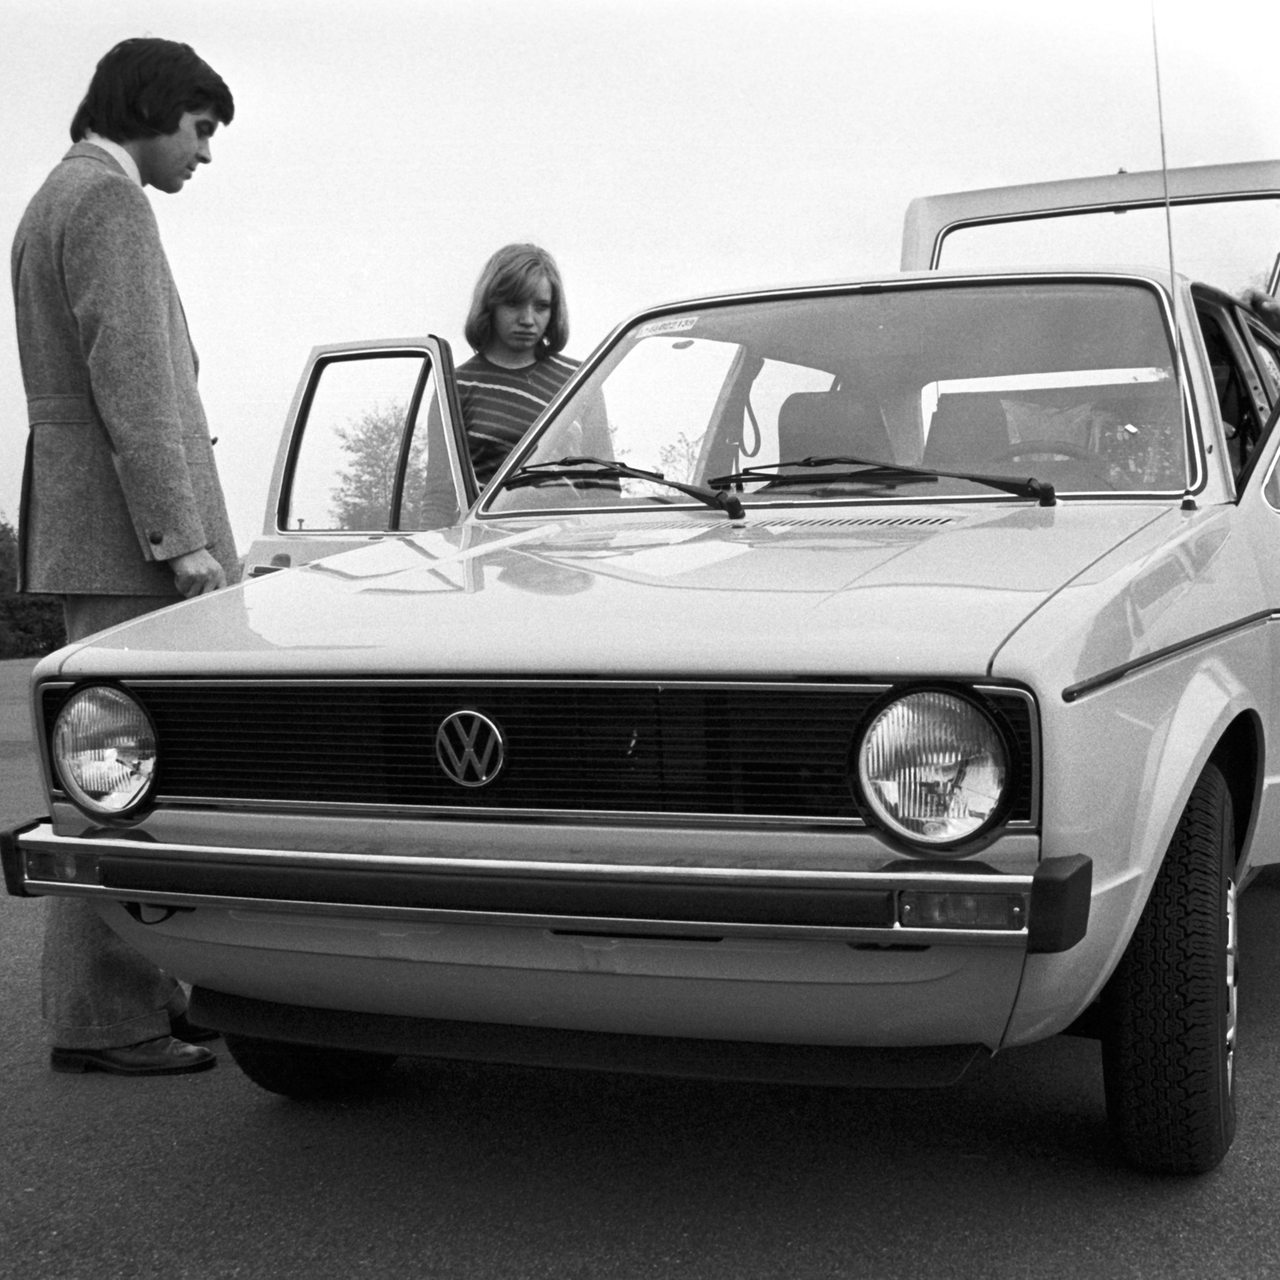 Personen begutachten einen VW Golf 1 im Jahre 1974 (Archivbild)